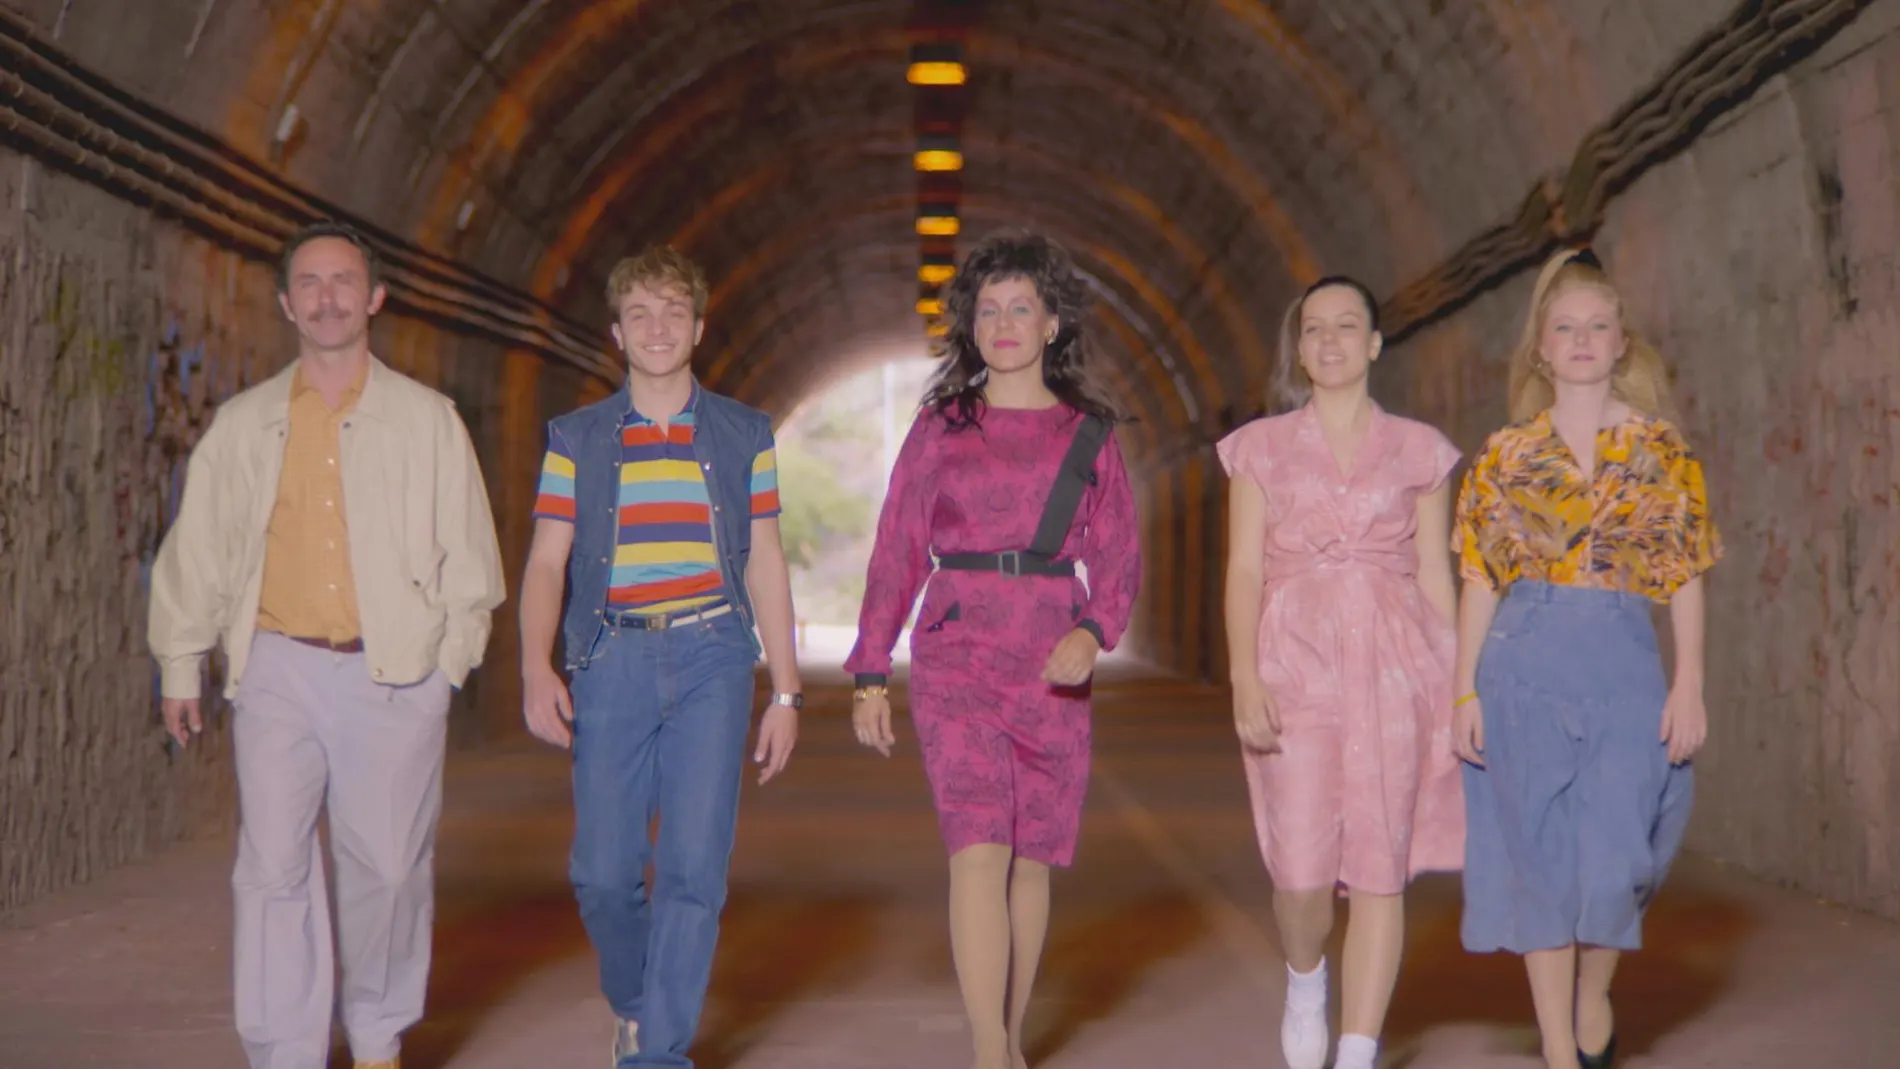 El pelo cardado, las hombreras y los colores pastel invaden a la famila Vela Cedena en los 80